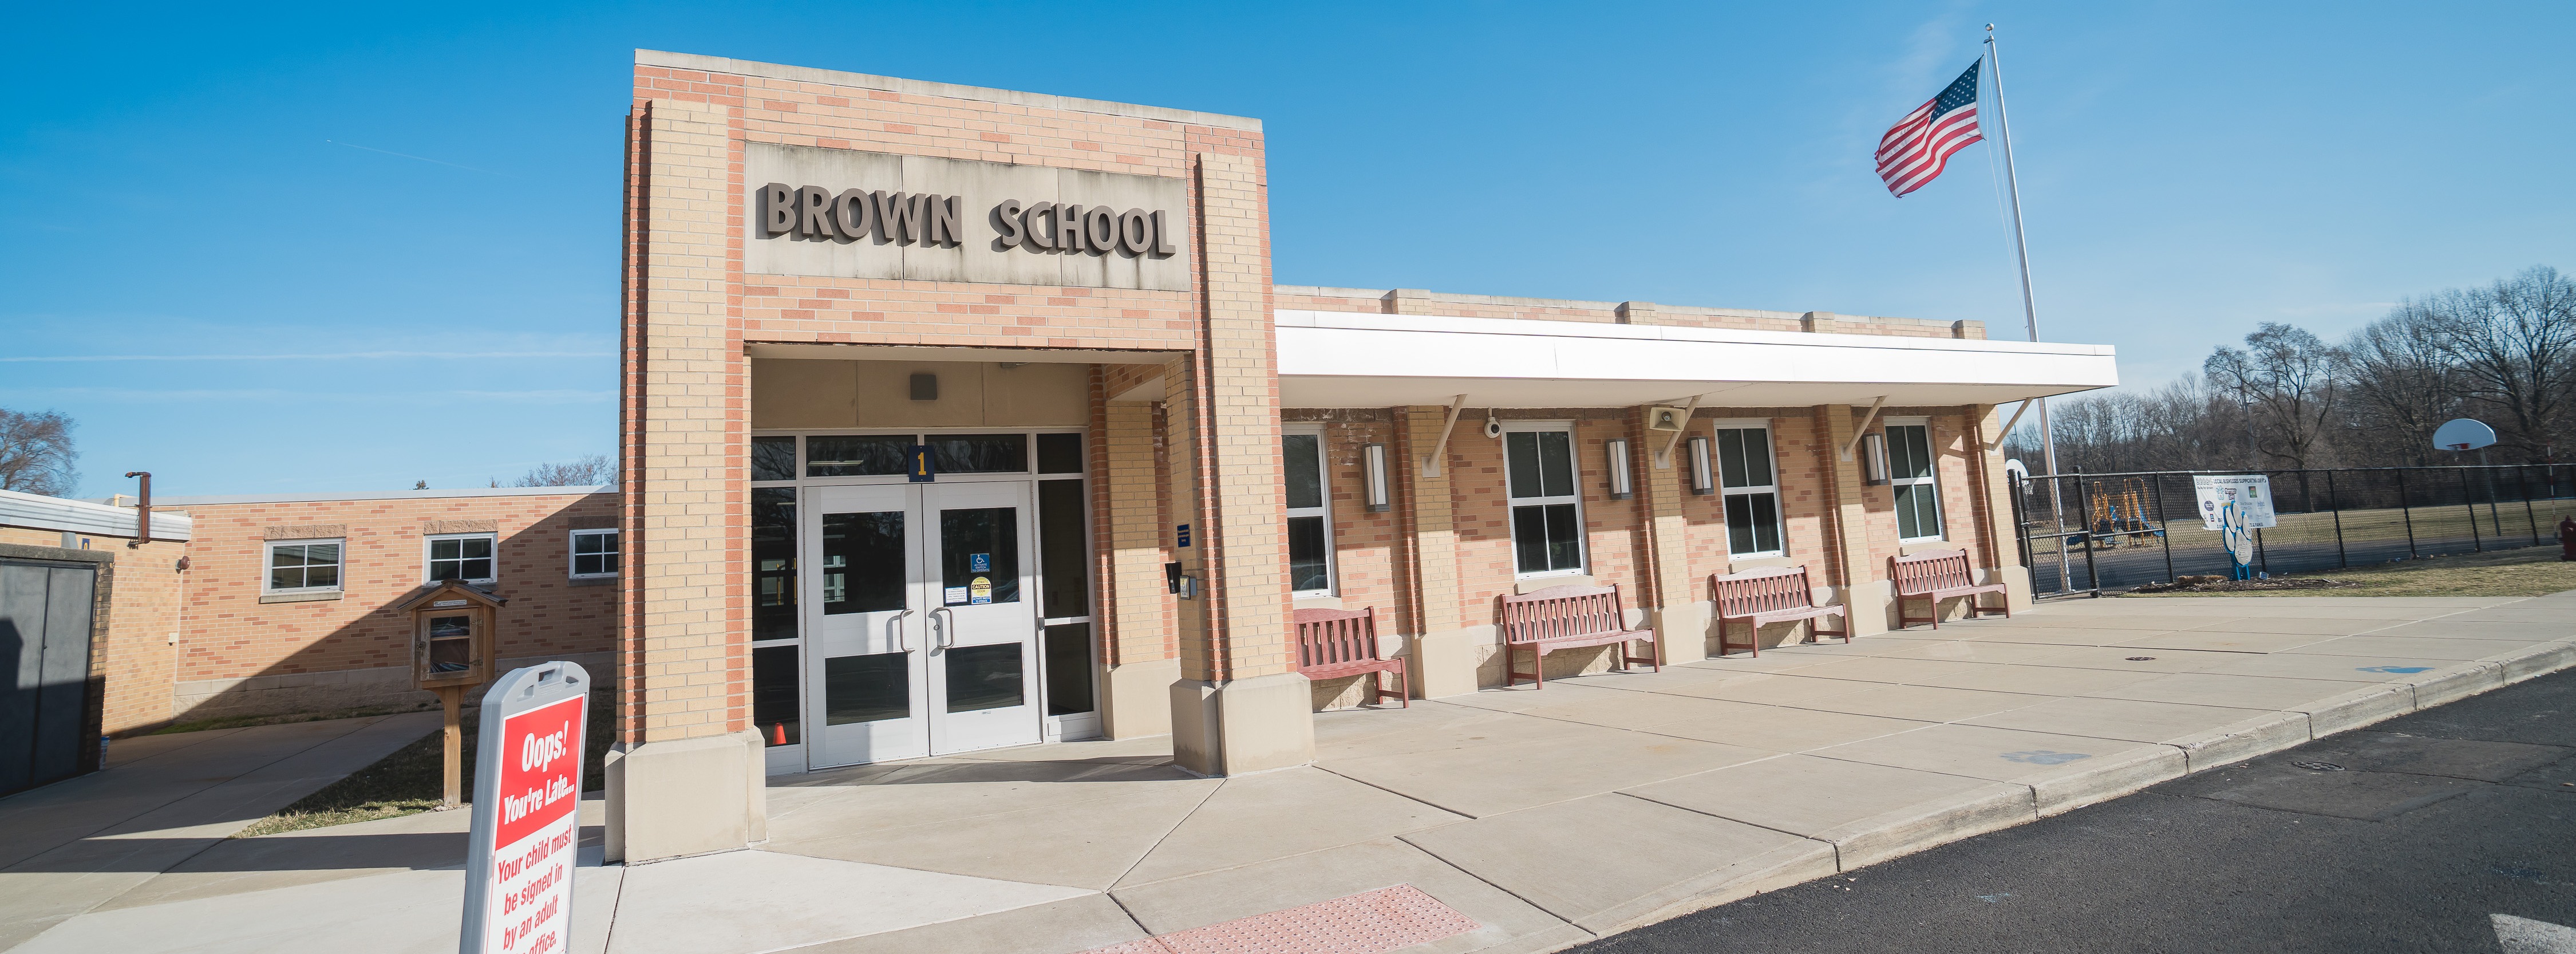 Brown Elementary School